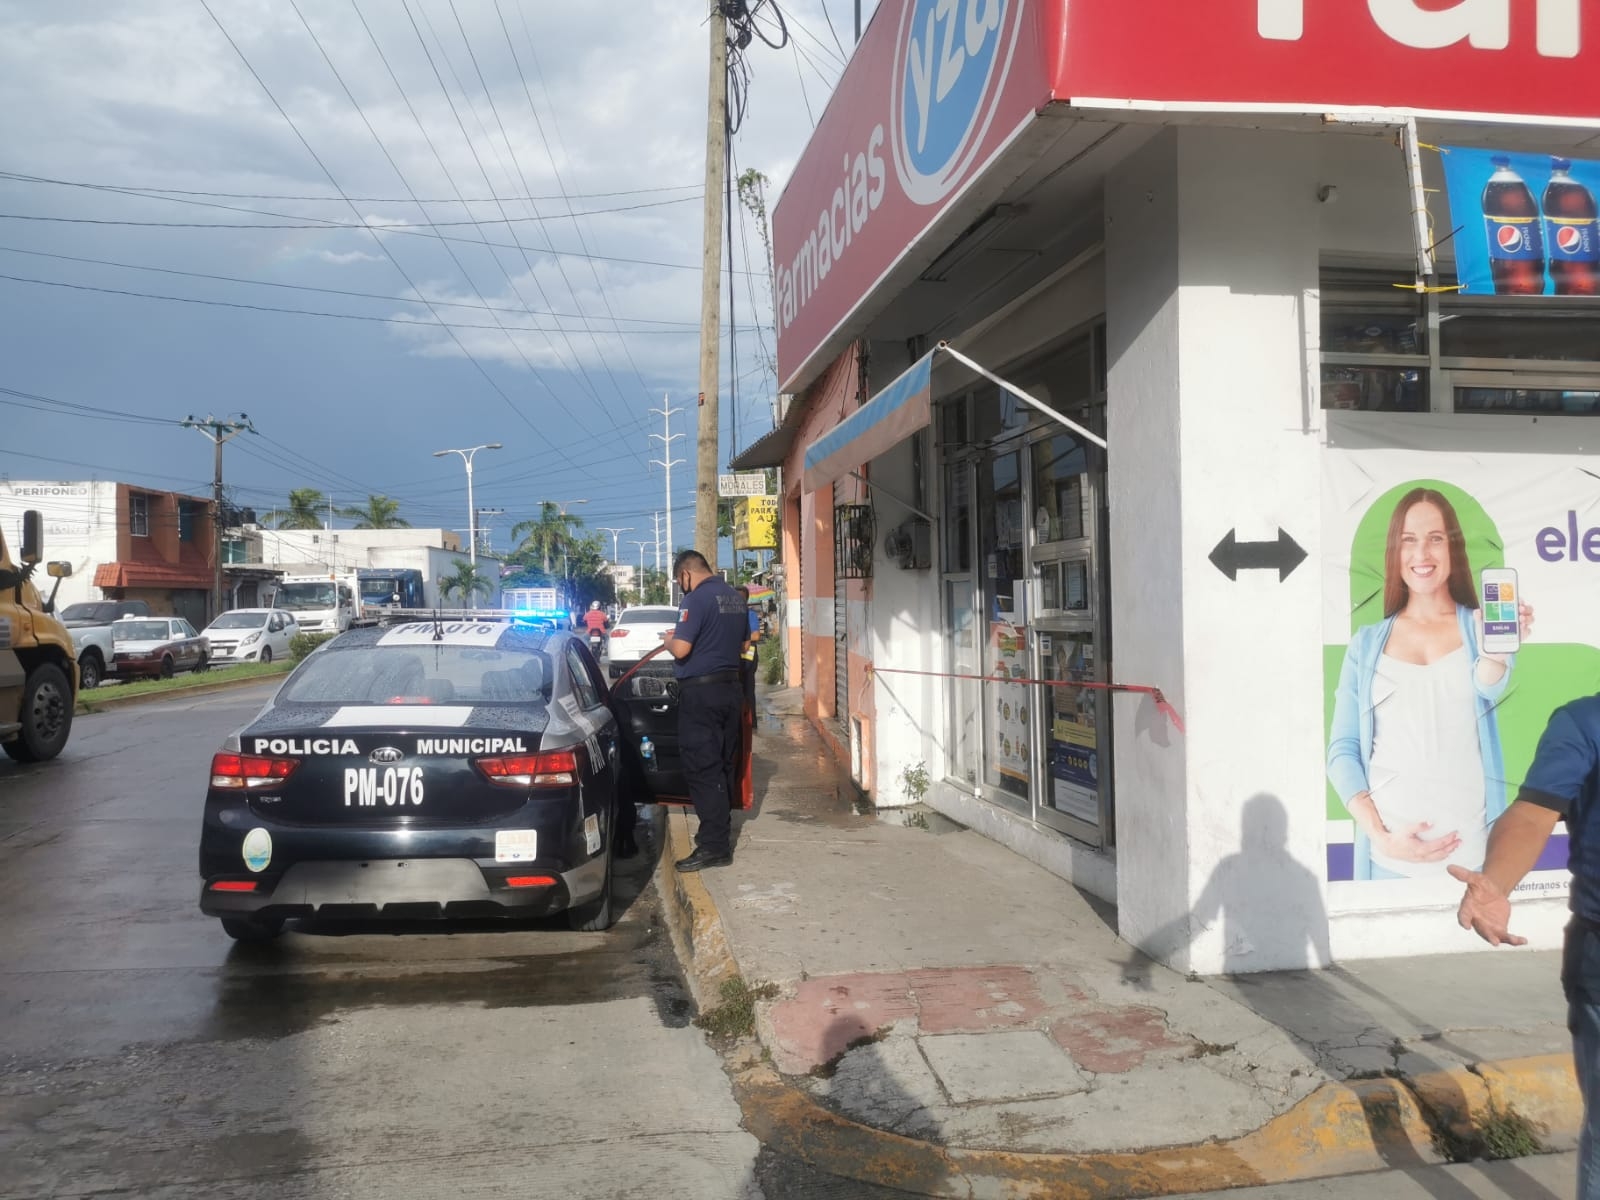 Vecinos detienen y golpean a un hombre que atracó una farmacia Yza en Ciudad del Carmen